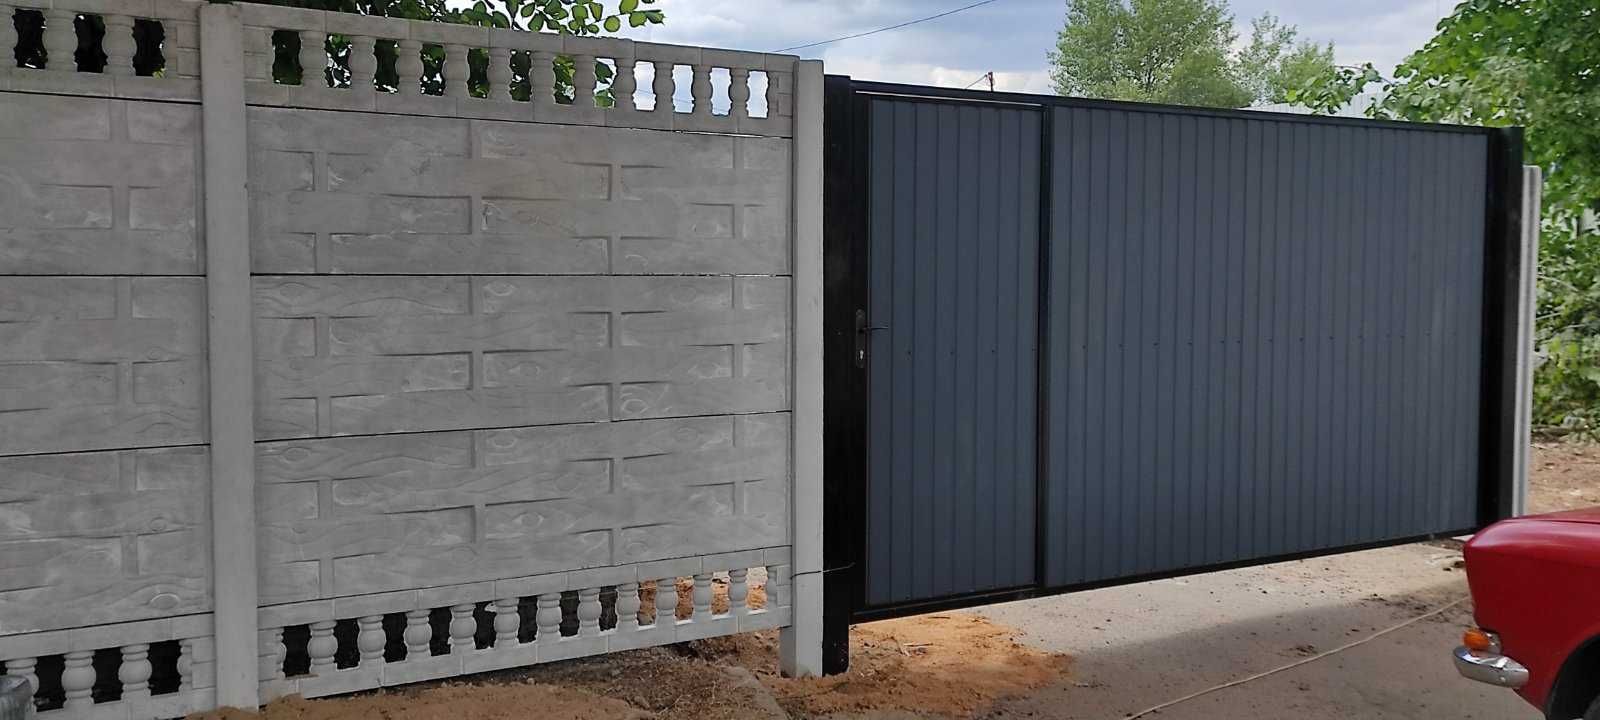 Найдешевша огорожа це бетонний паркан (забор, еврозабор)